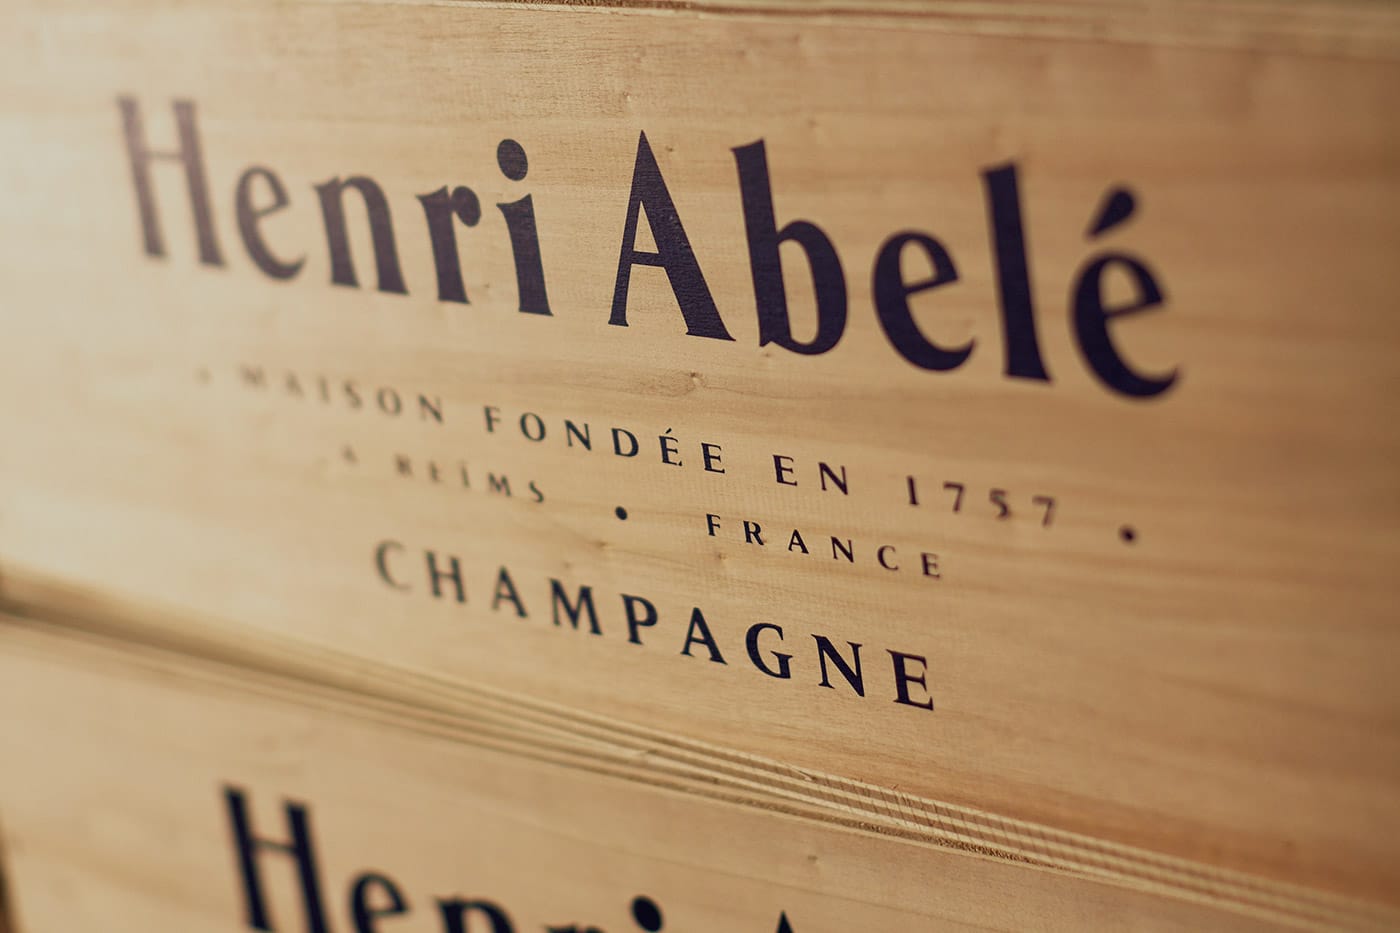 Caixa de vinho Henri Abele Champagne